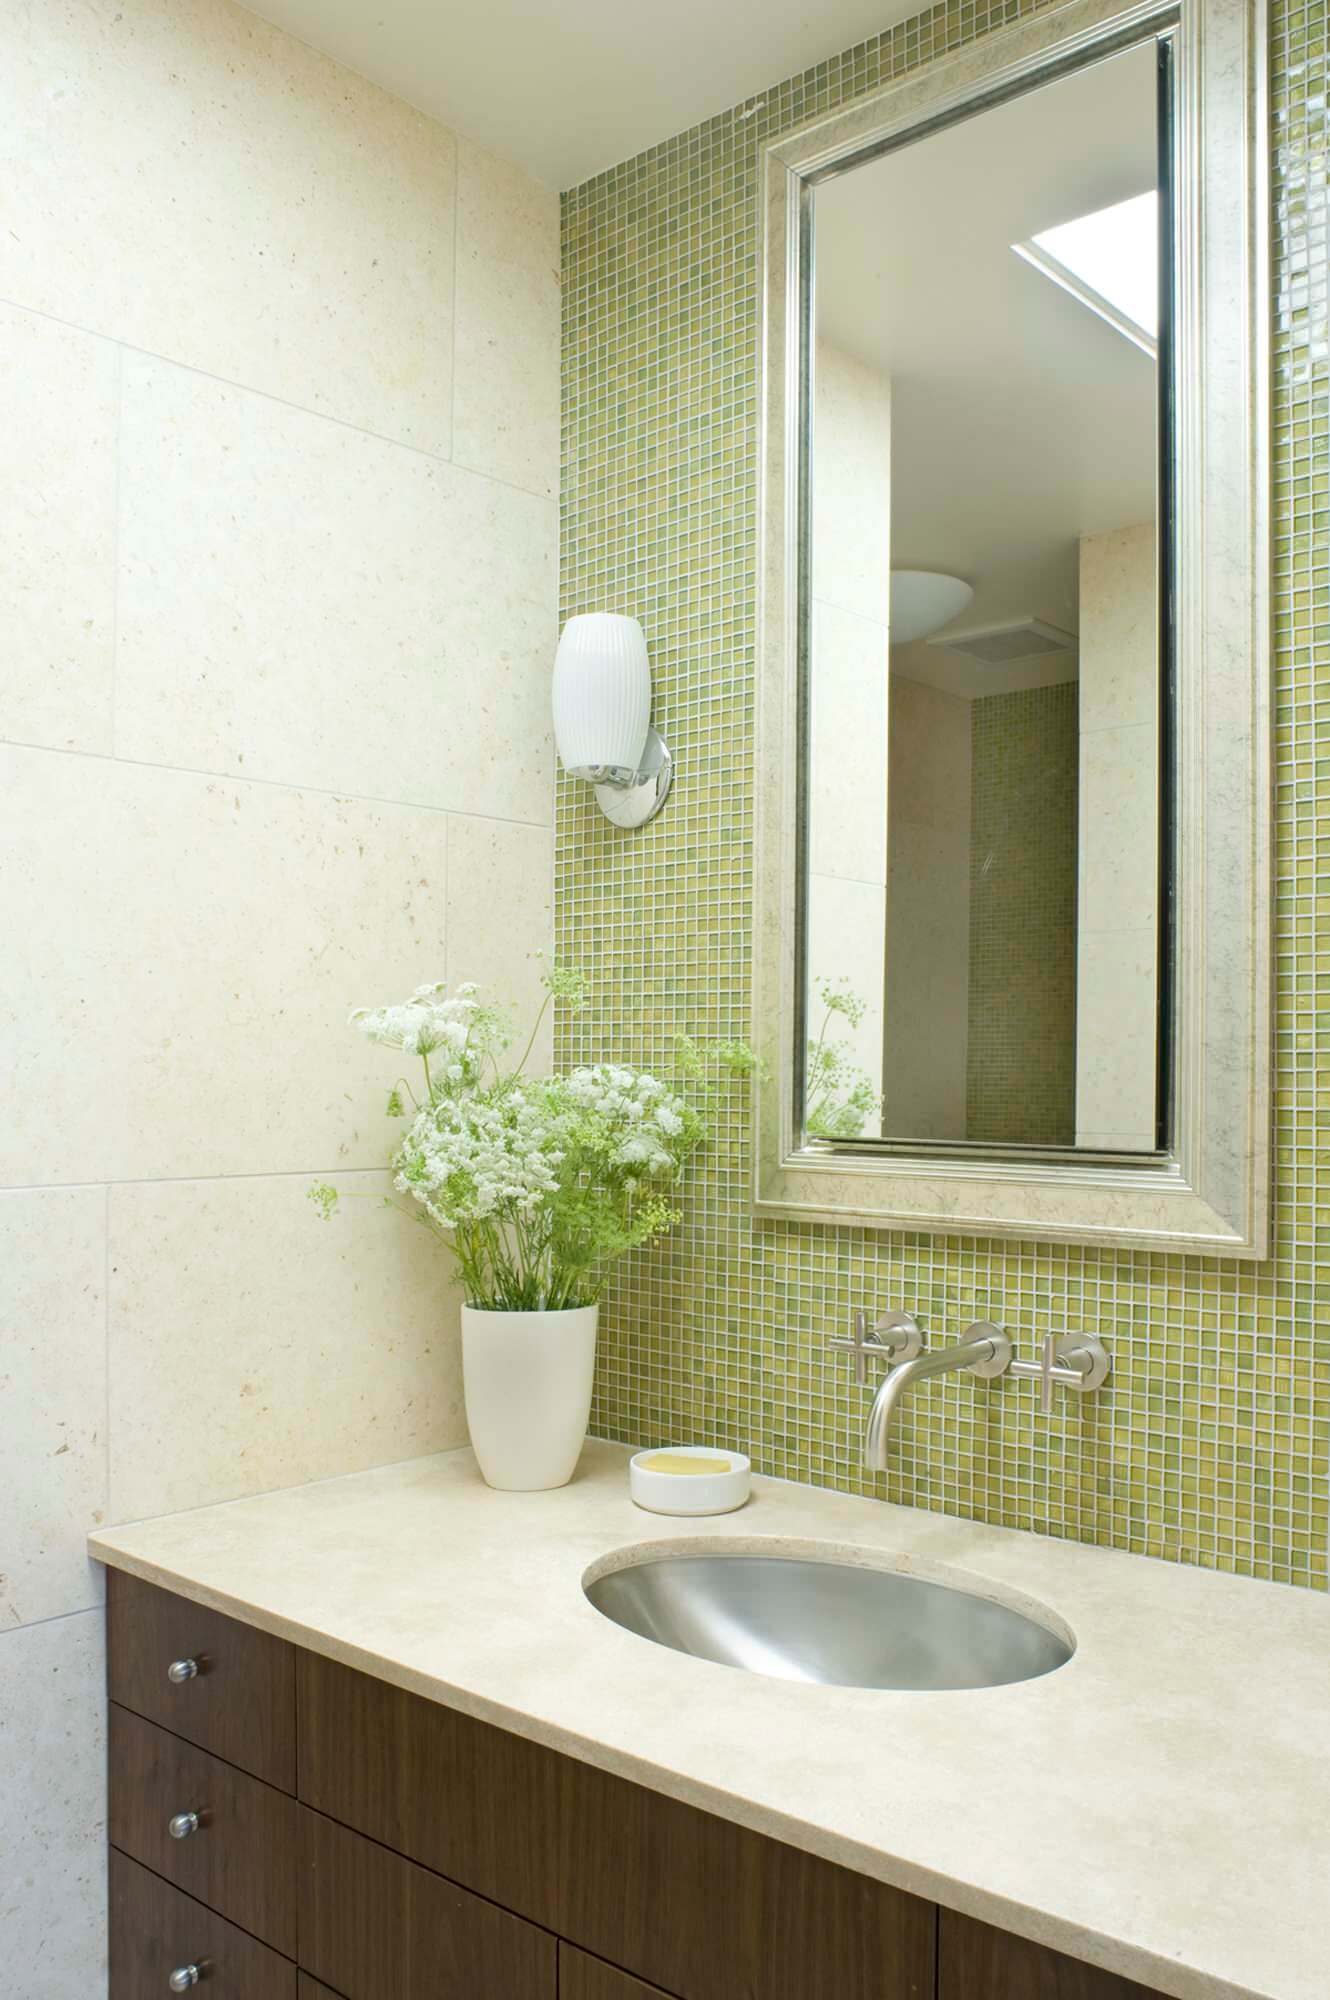 10 contemporary bathroom faucet designs